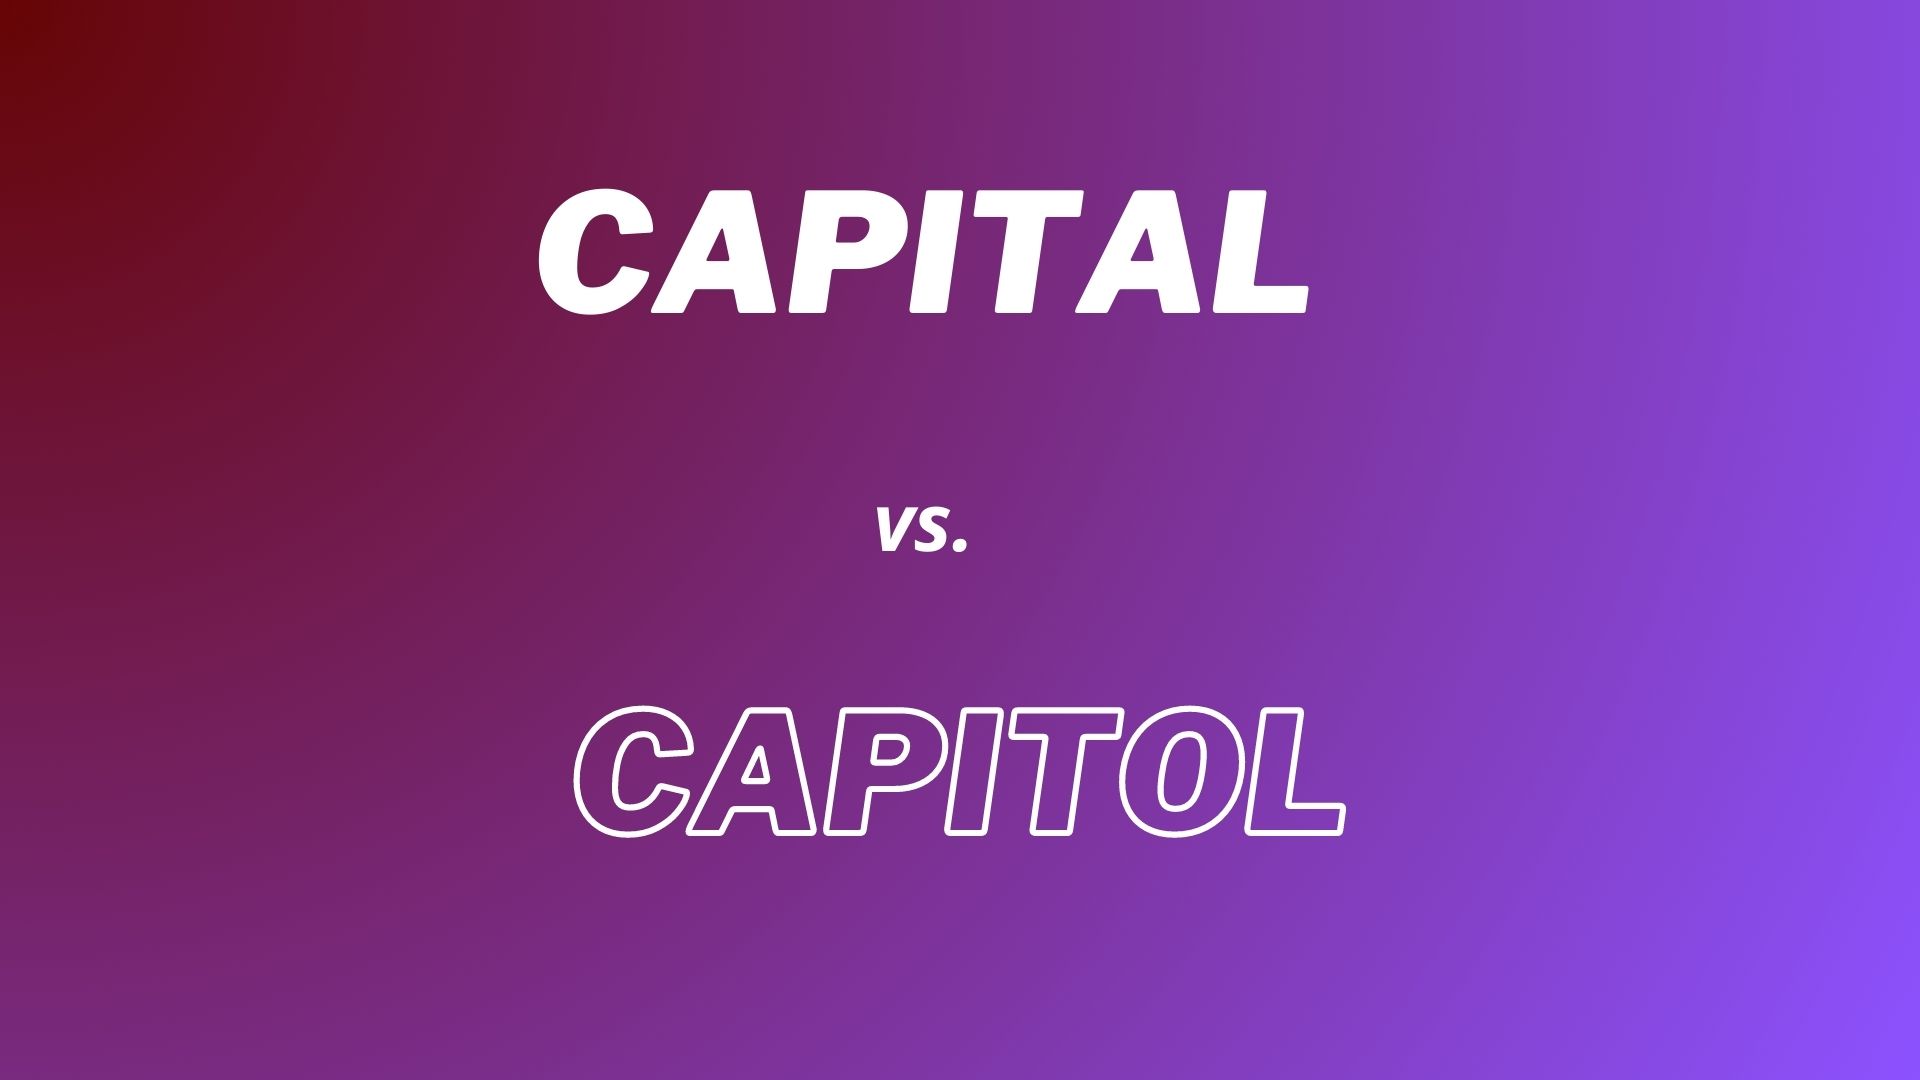 Wyjaśnienie różnicy pomiędzy słowami "Capital"  i "Capitol"